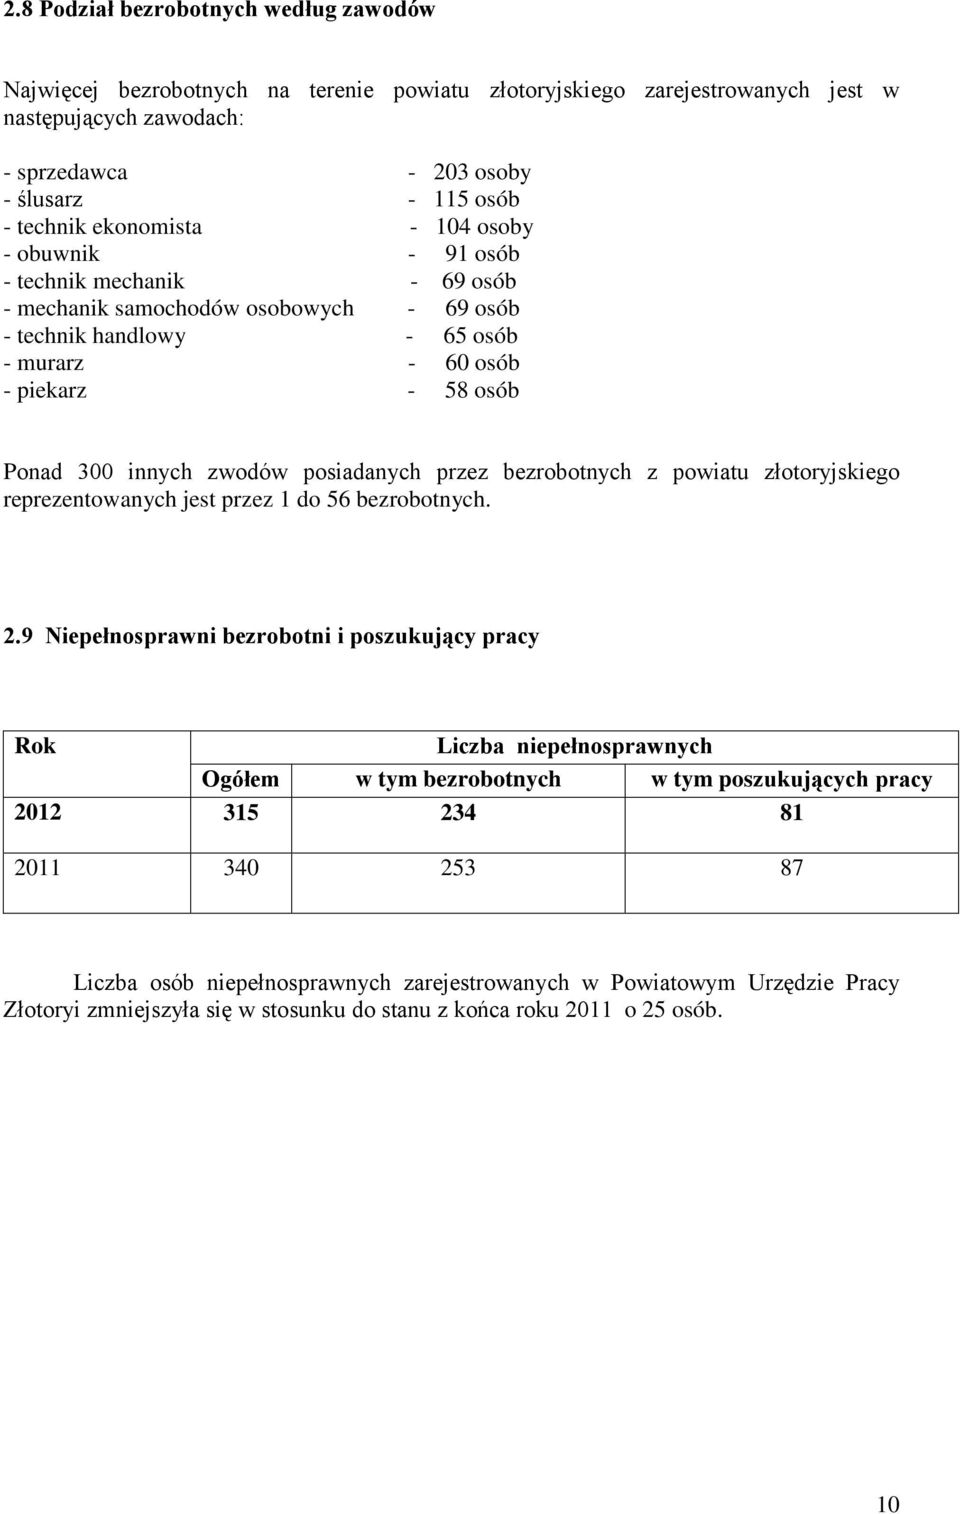 innych zwodów posiadanych przez bezrobotnych z powiatu złotoryjskiego reprezentowanych jest przez 1 do 56 bezrobotnych. 2.